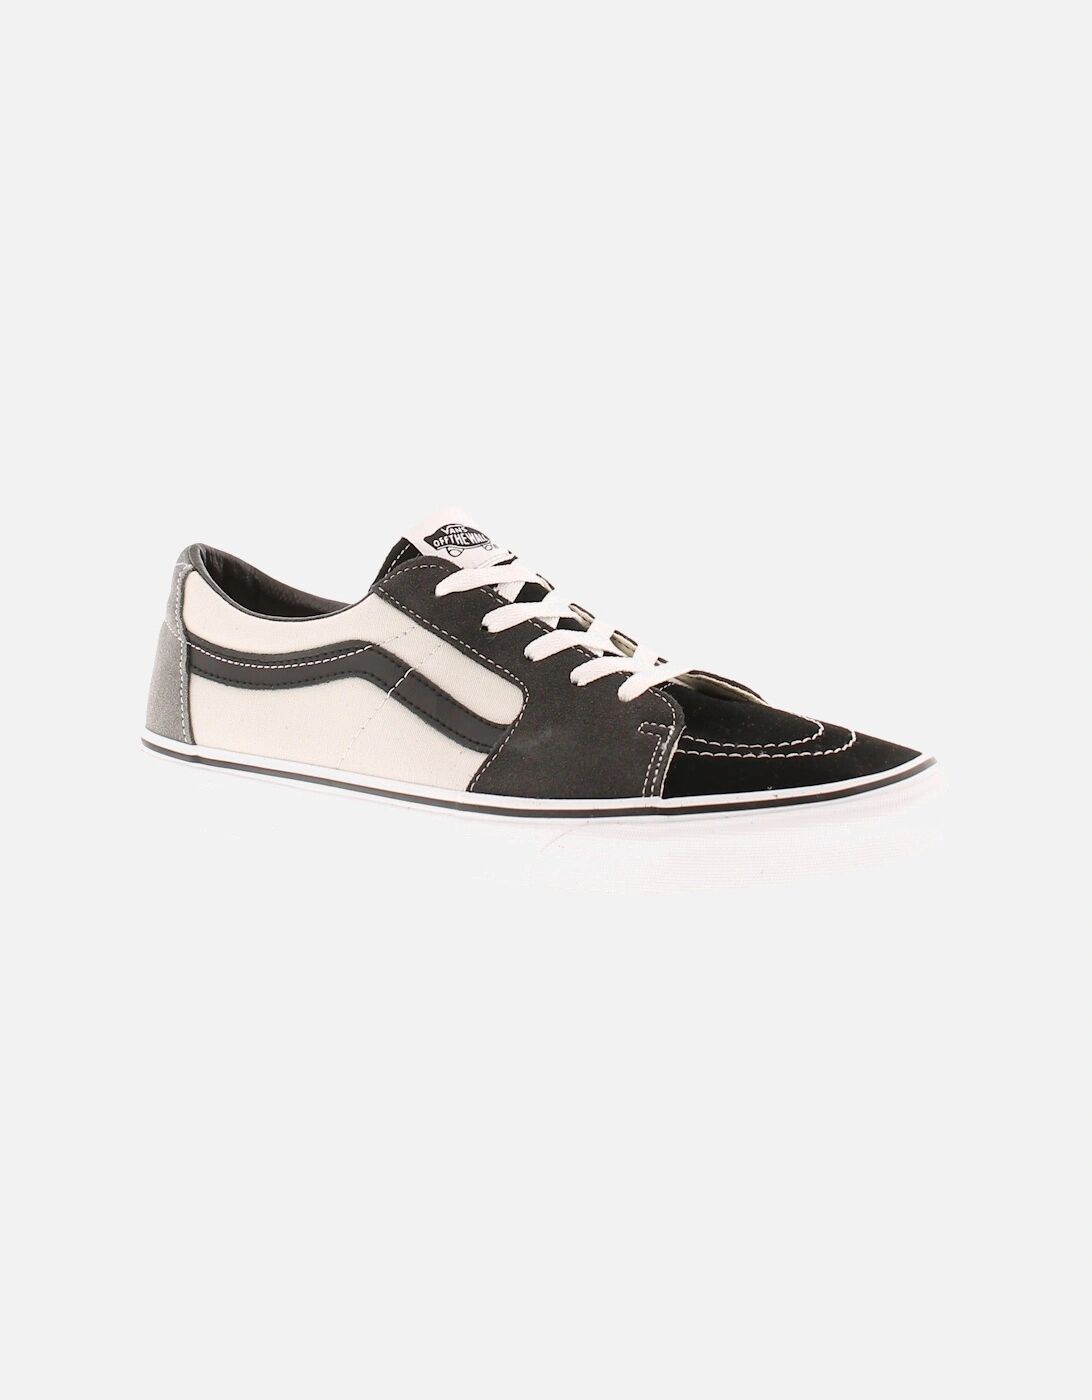 Men's Vans Mens Canvas Shoes UA SK8 Low Lace Up grey UK Size - Size: 8.5